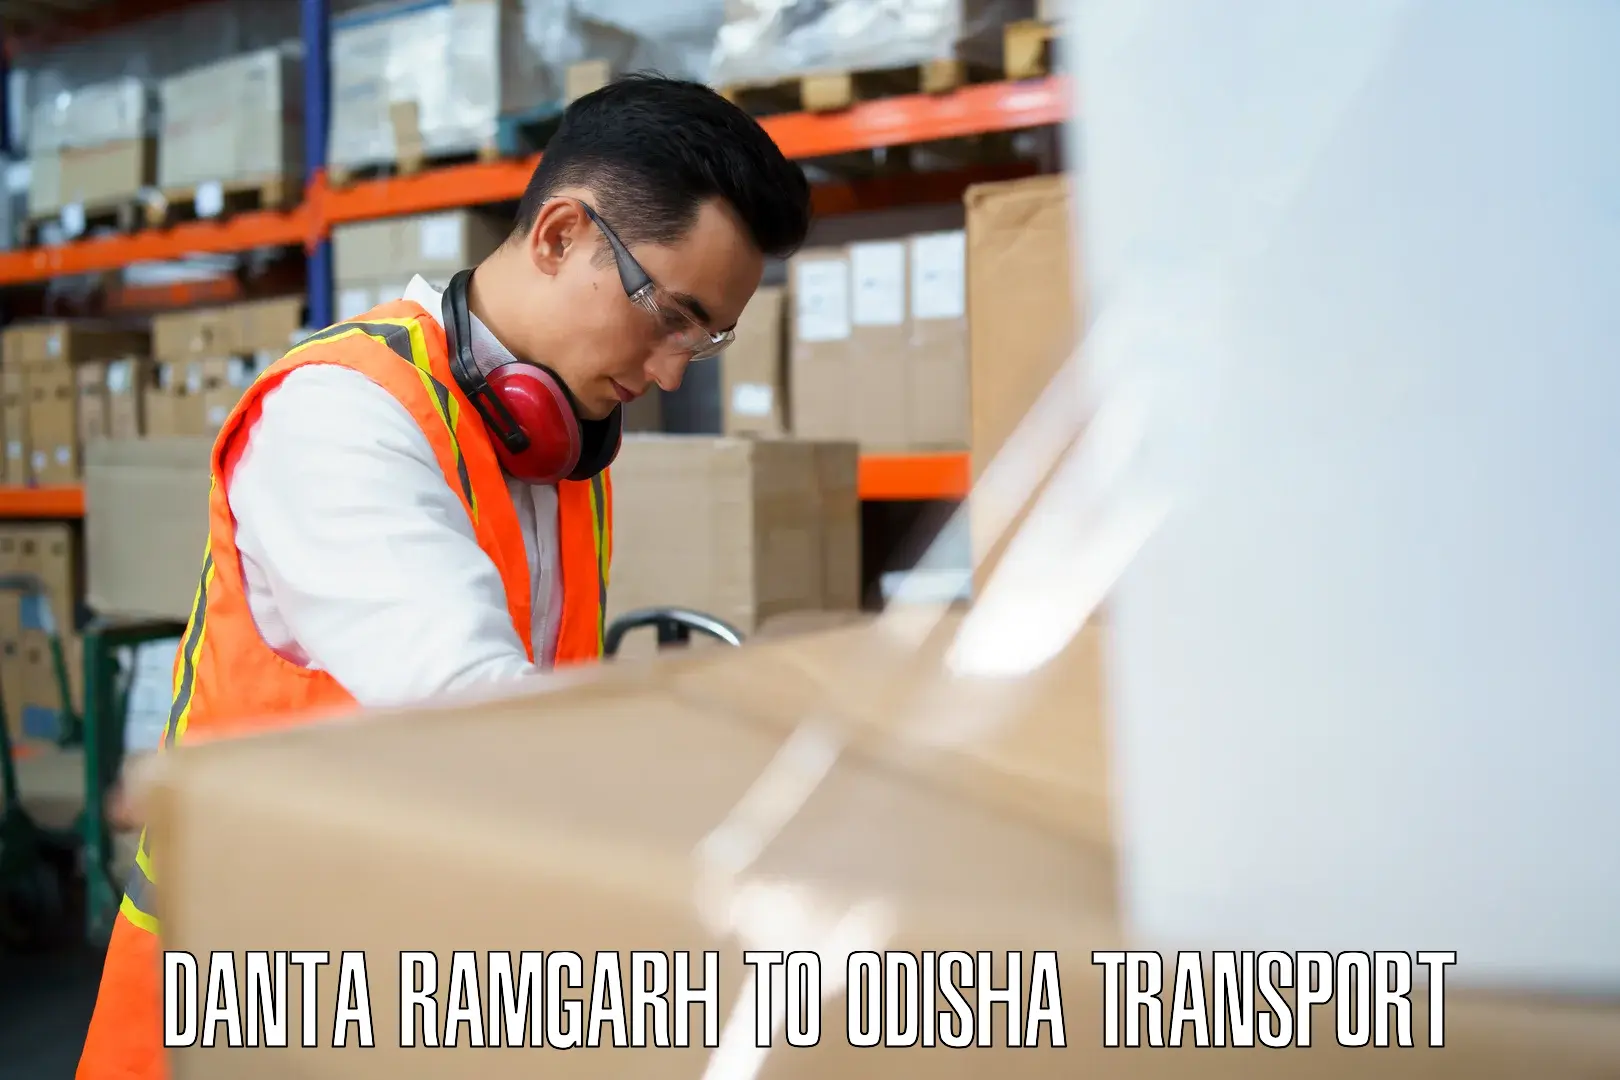 Delivery service in Danta Ramgarh to Pottangi